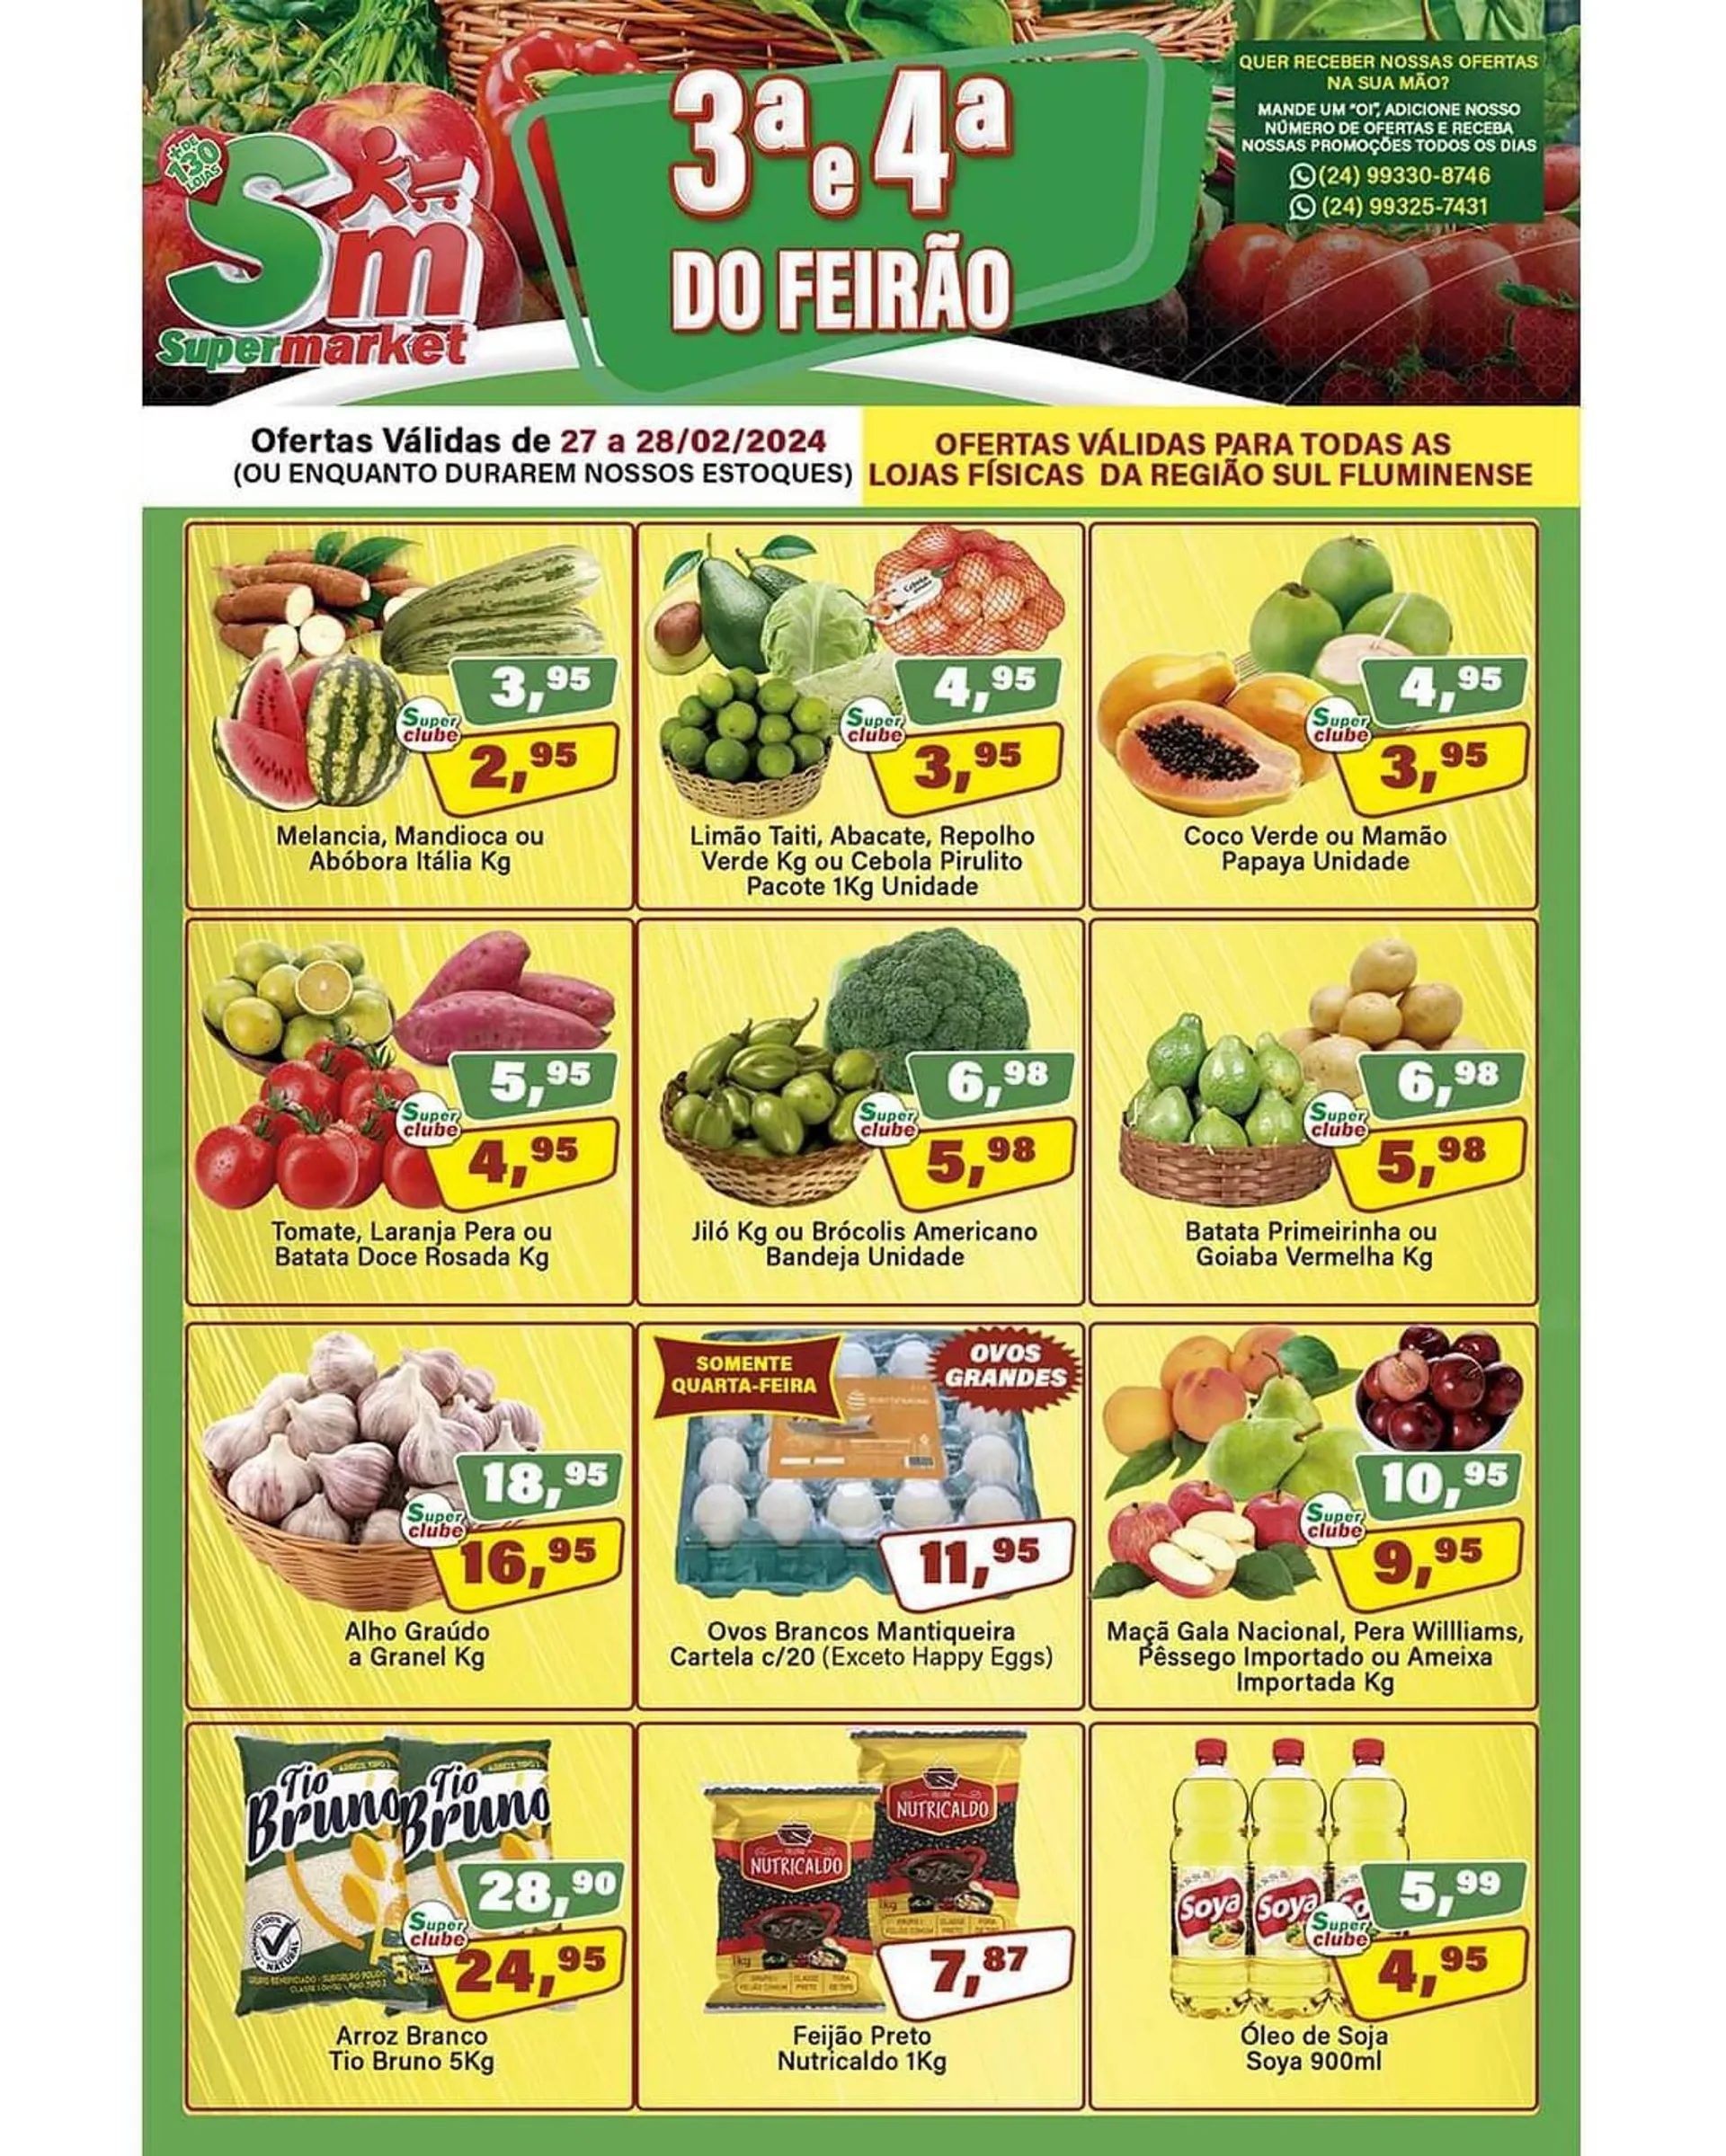 Encarte de Catálogo Floresta Supermercados 27 de fevereiro até 28 de fevereiro 2024 - Pagina 